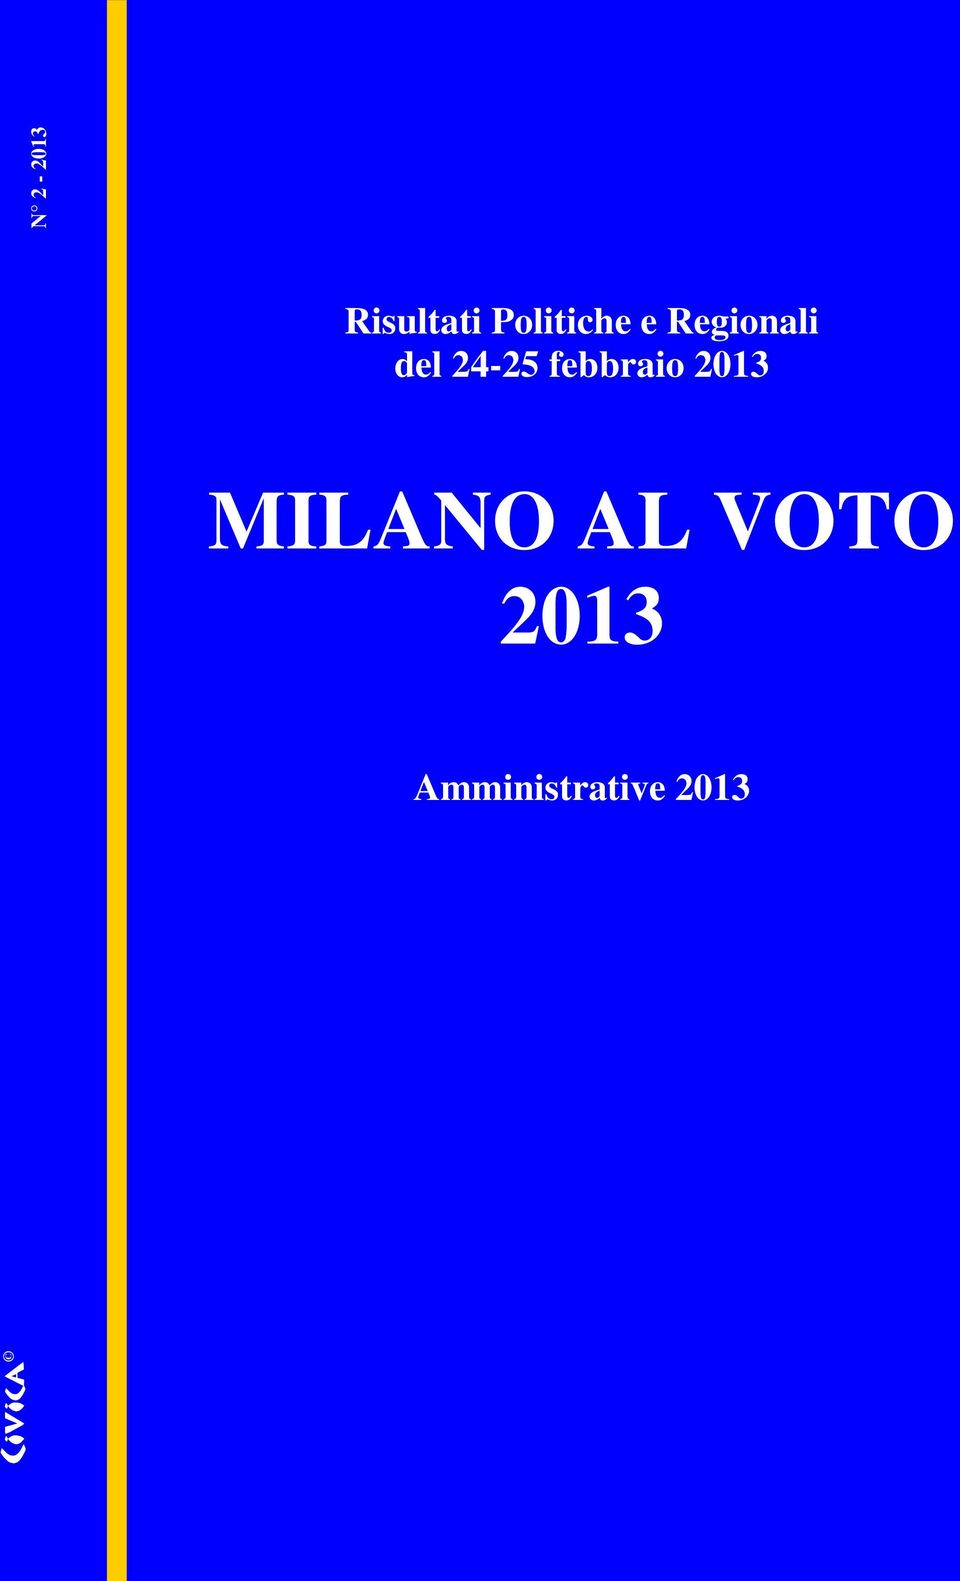 24-25 febbraio 2013 MILANO